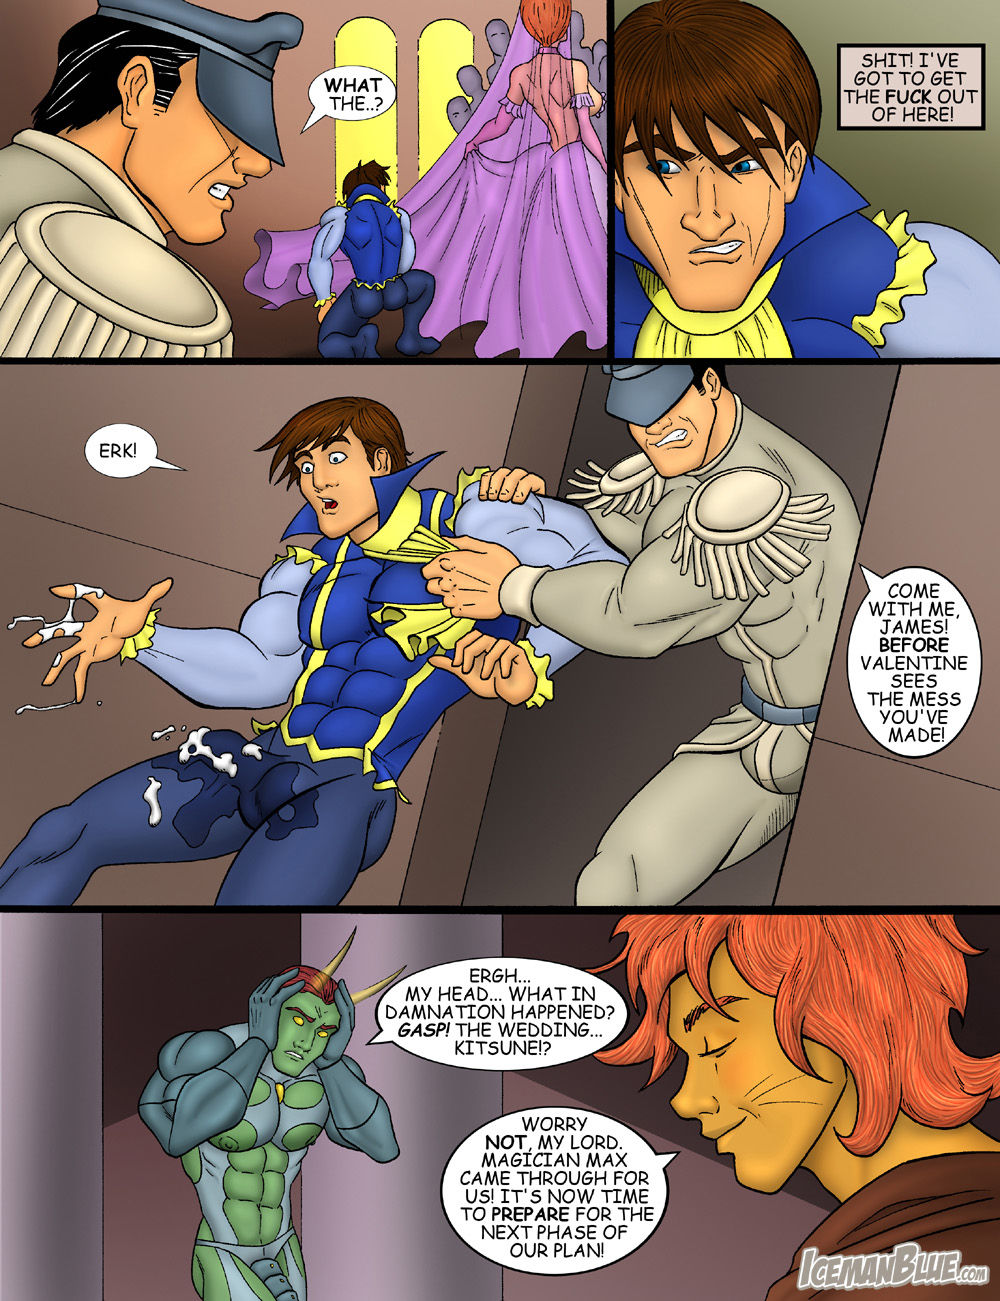 Lost Fantasy Hero Iceman Blue page 29